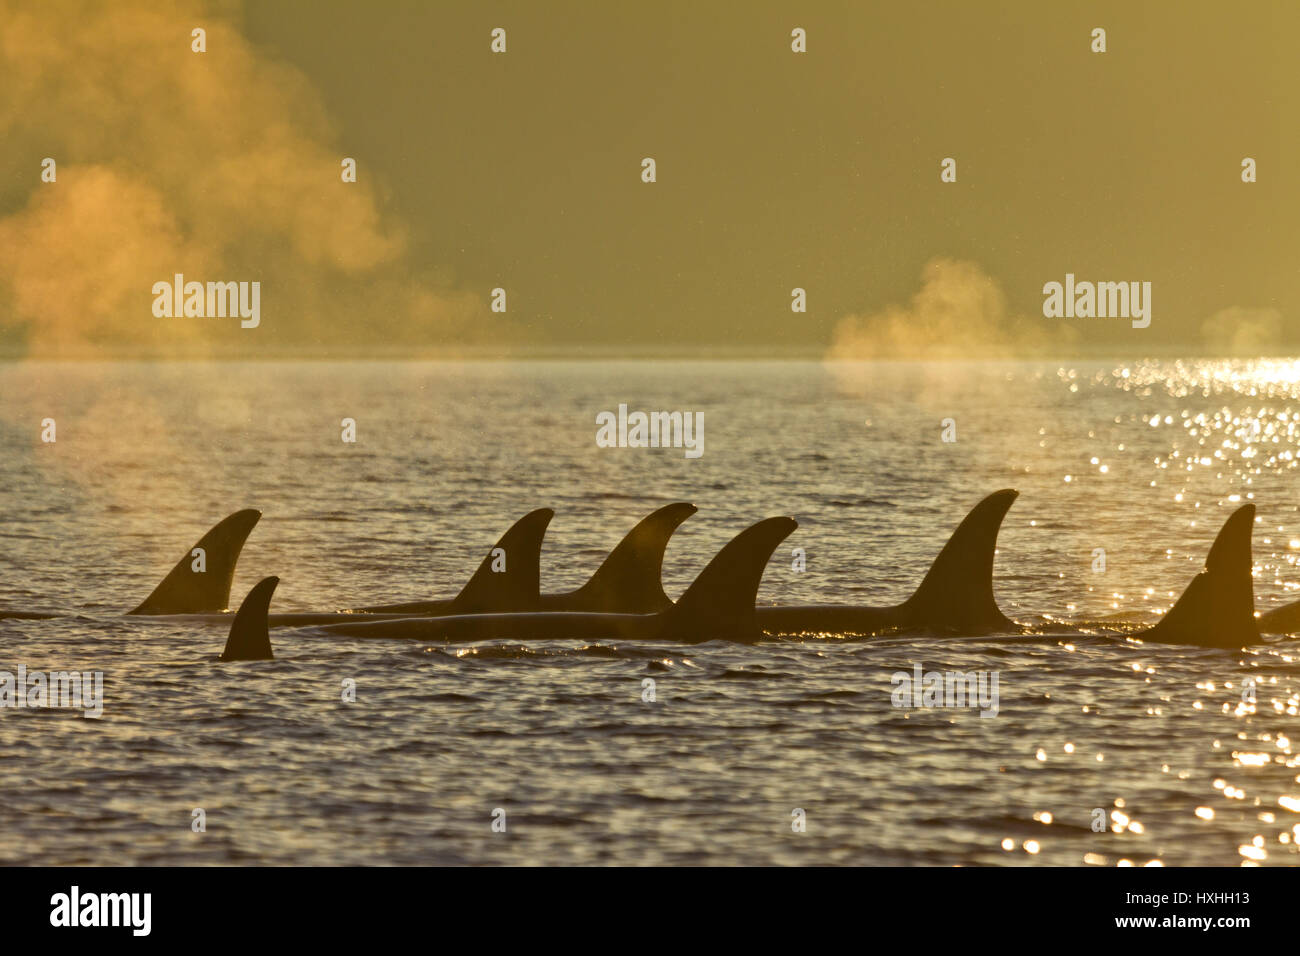 Gruppe der nördlichen Resident Orcas in der Johnstone Strait während Sonnenuntergang, Britisch-Kolumbien, Kanada reisen Stockfoto